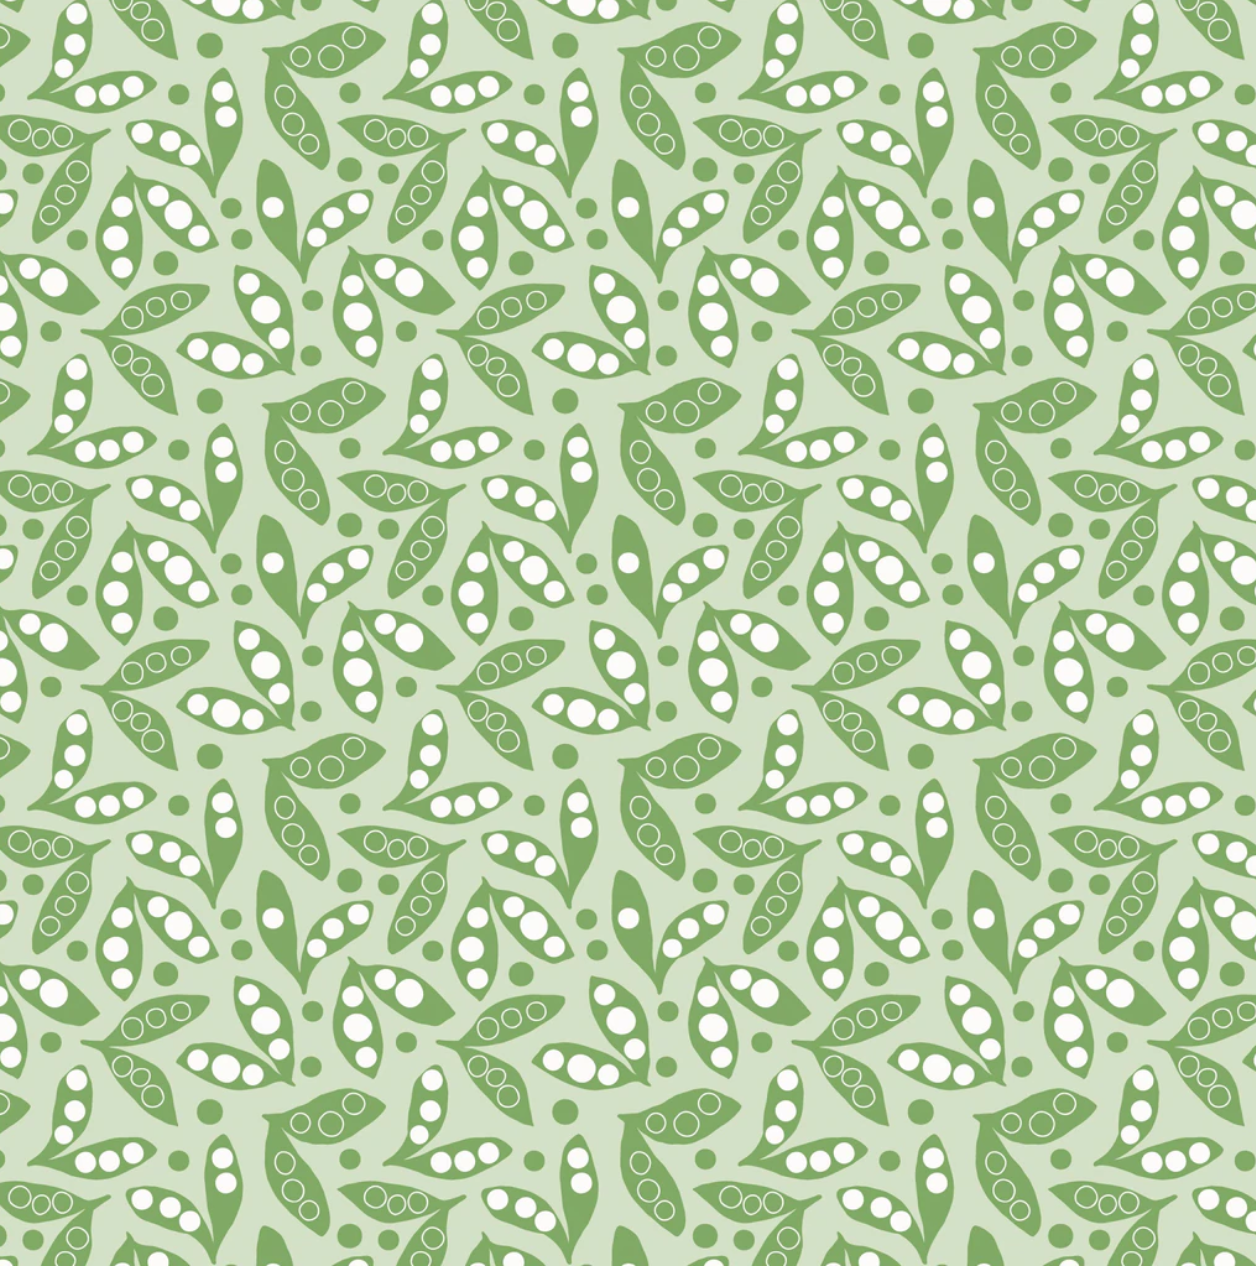 sweet pea pattern